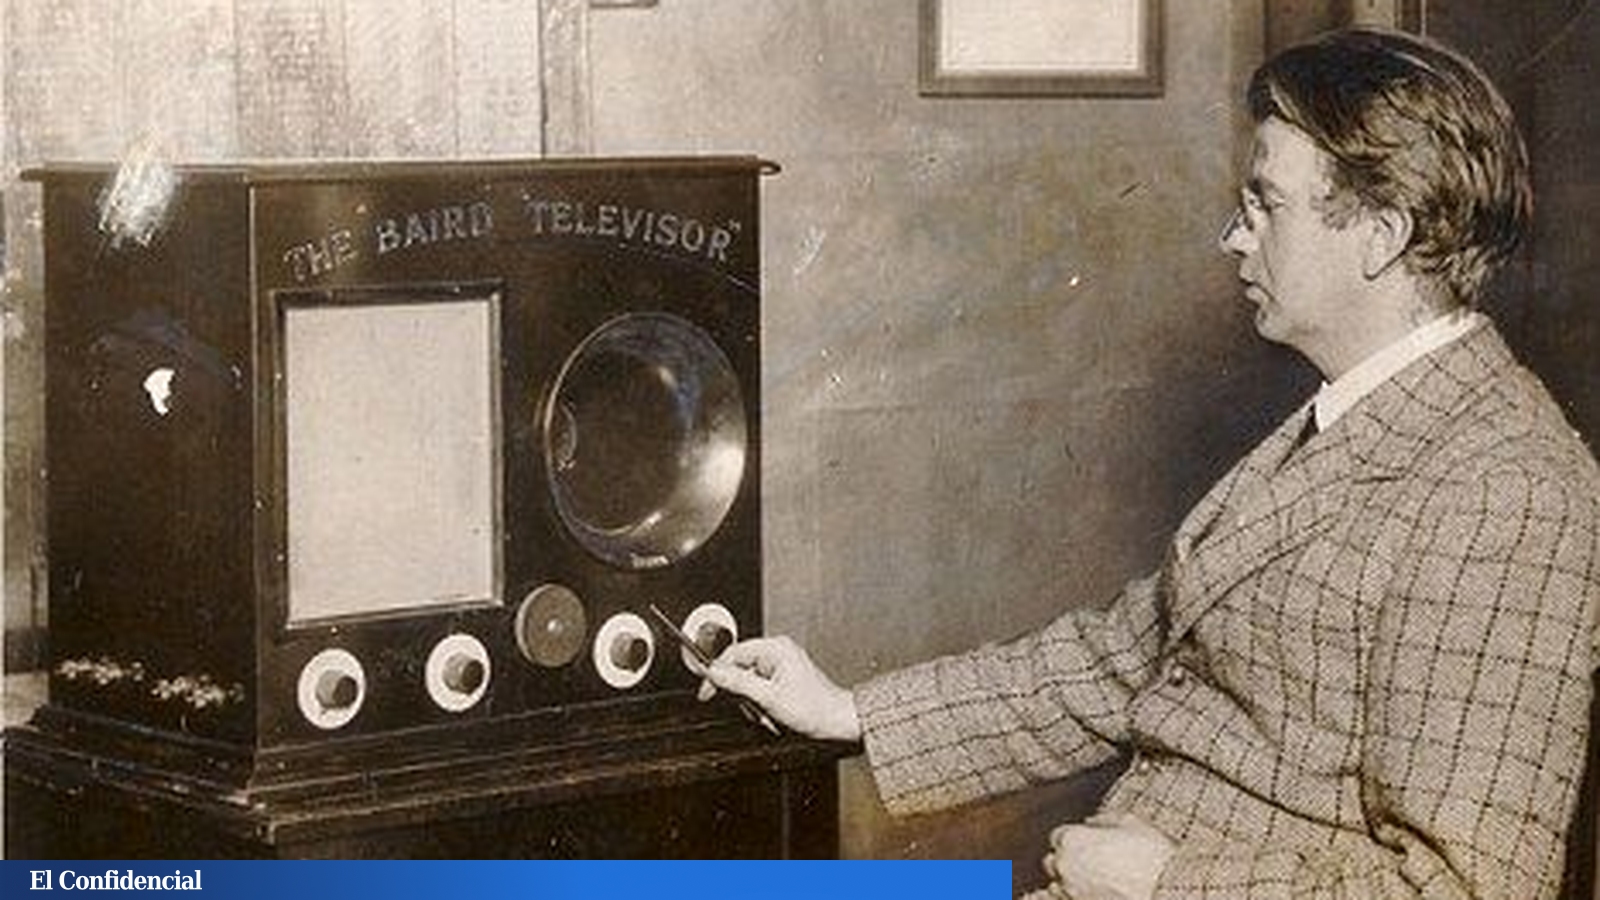 Первый плоский телевизор. Джон Бэрд Телевидение. Джон логи Бэрд телевизор. Джон логи Бэрд 1926. Телевидение.британский изобретатель Джон Лоуги Бэрд.